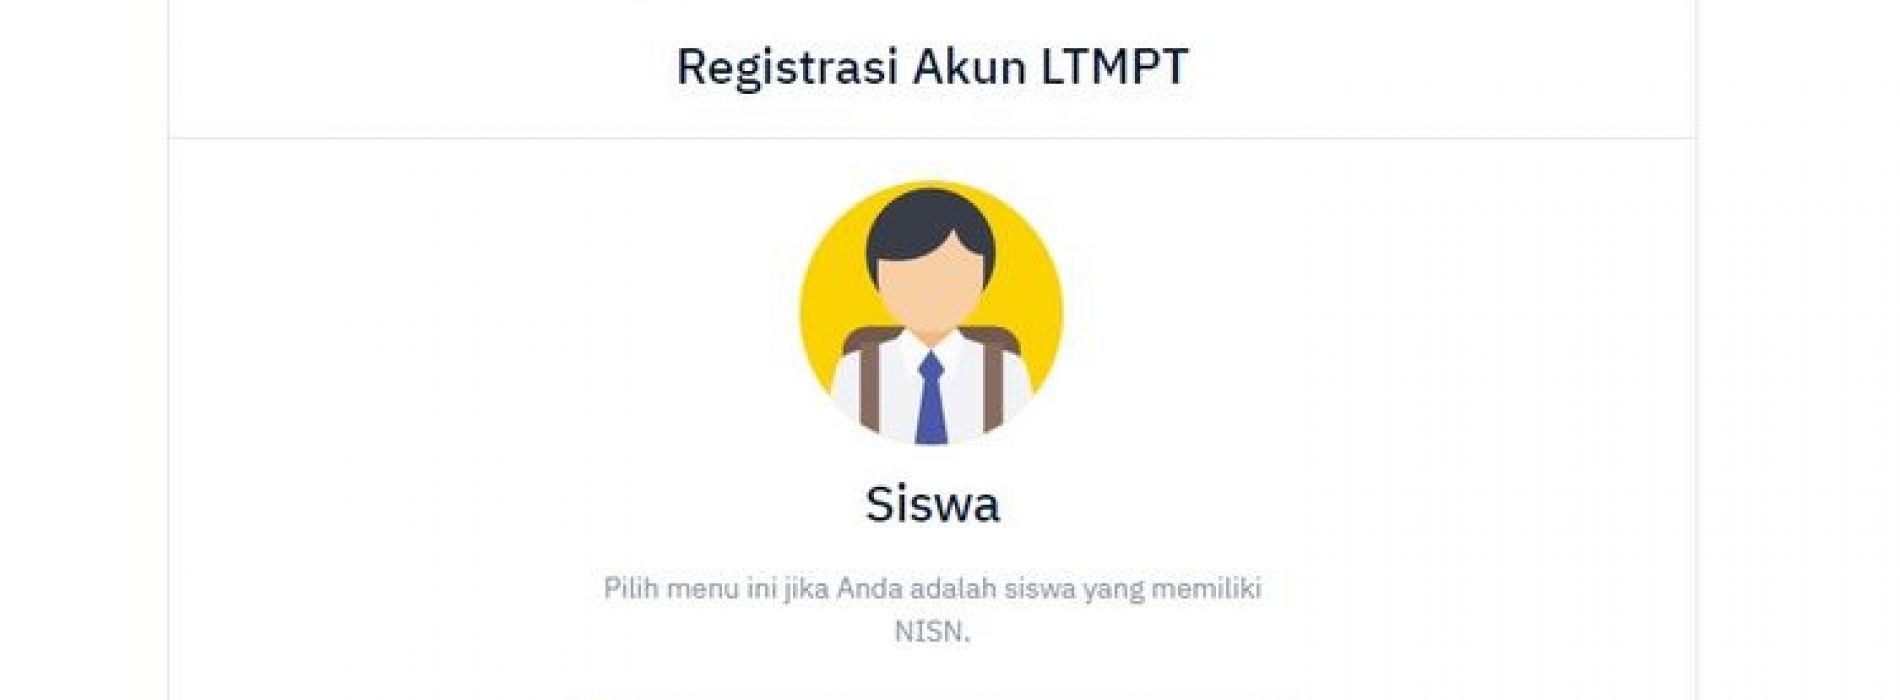 Registrasi Akun LTMPT Siswa 2022 diundur